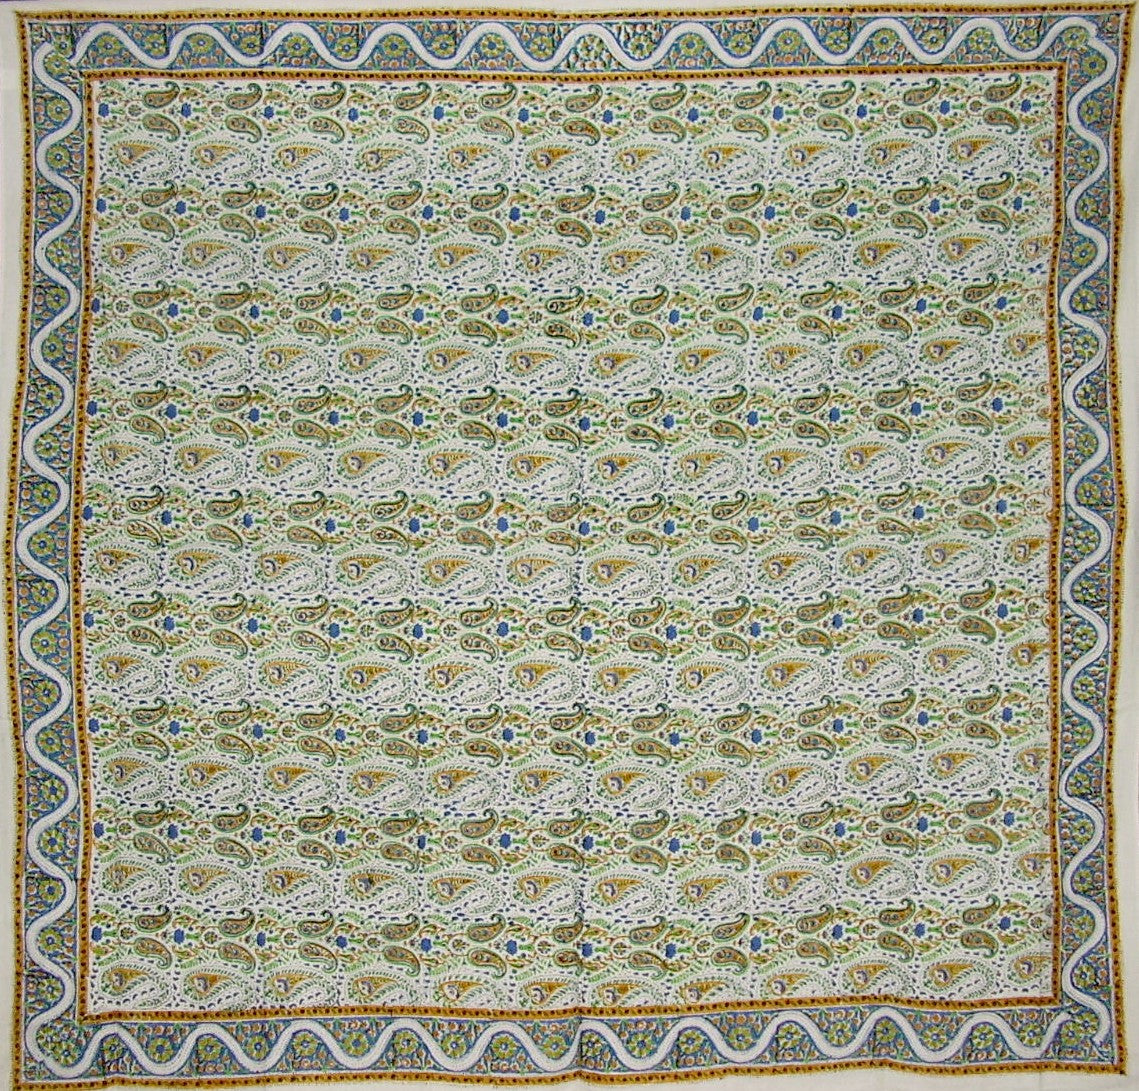 Toalha de mesa quadrada floral impressa em bloco manual de algodão 72" x 72"